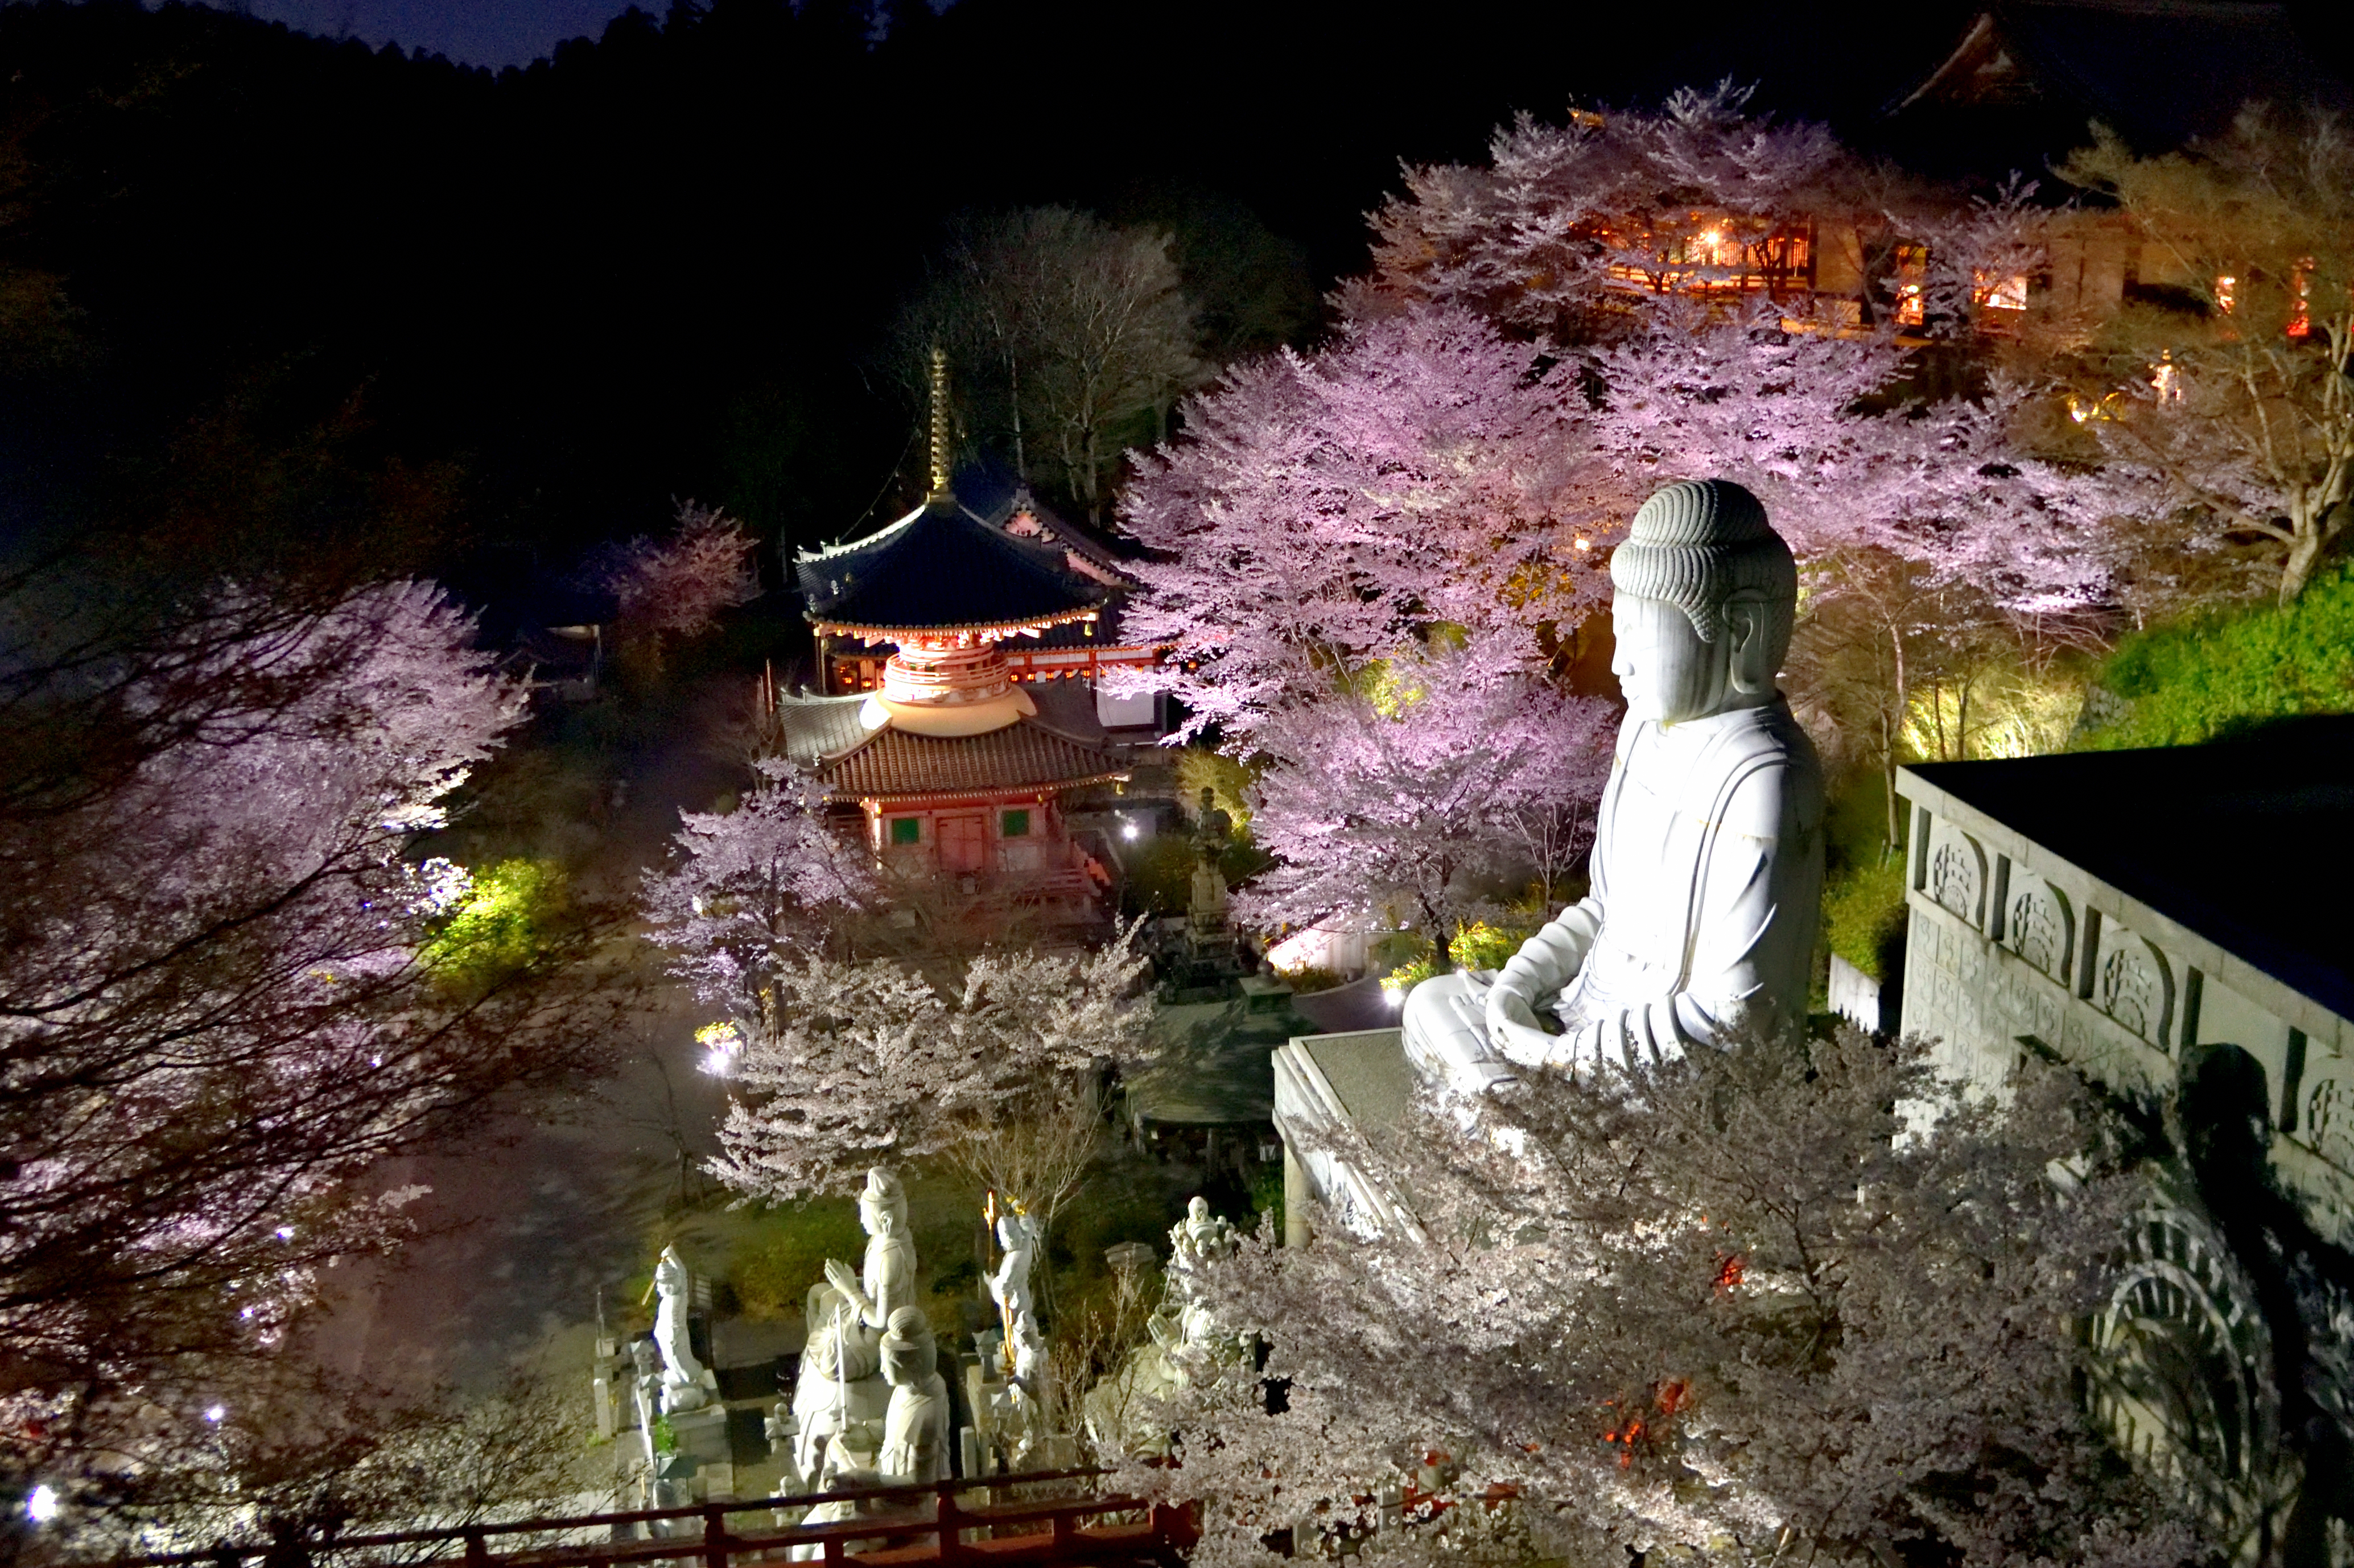 Buddha and stone statues illuminated in Tsubosaka temple